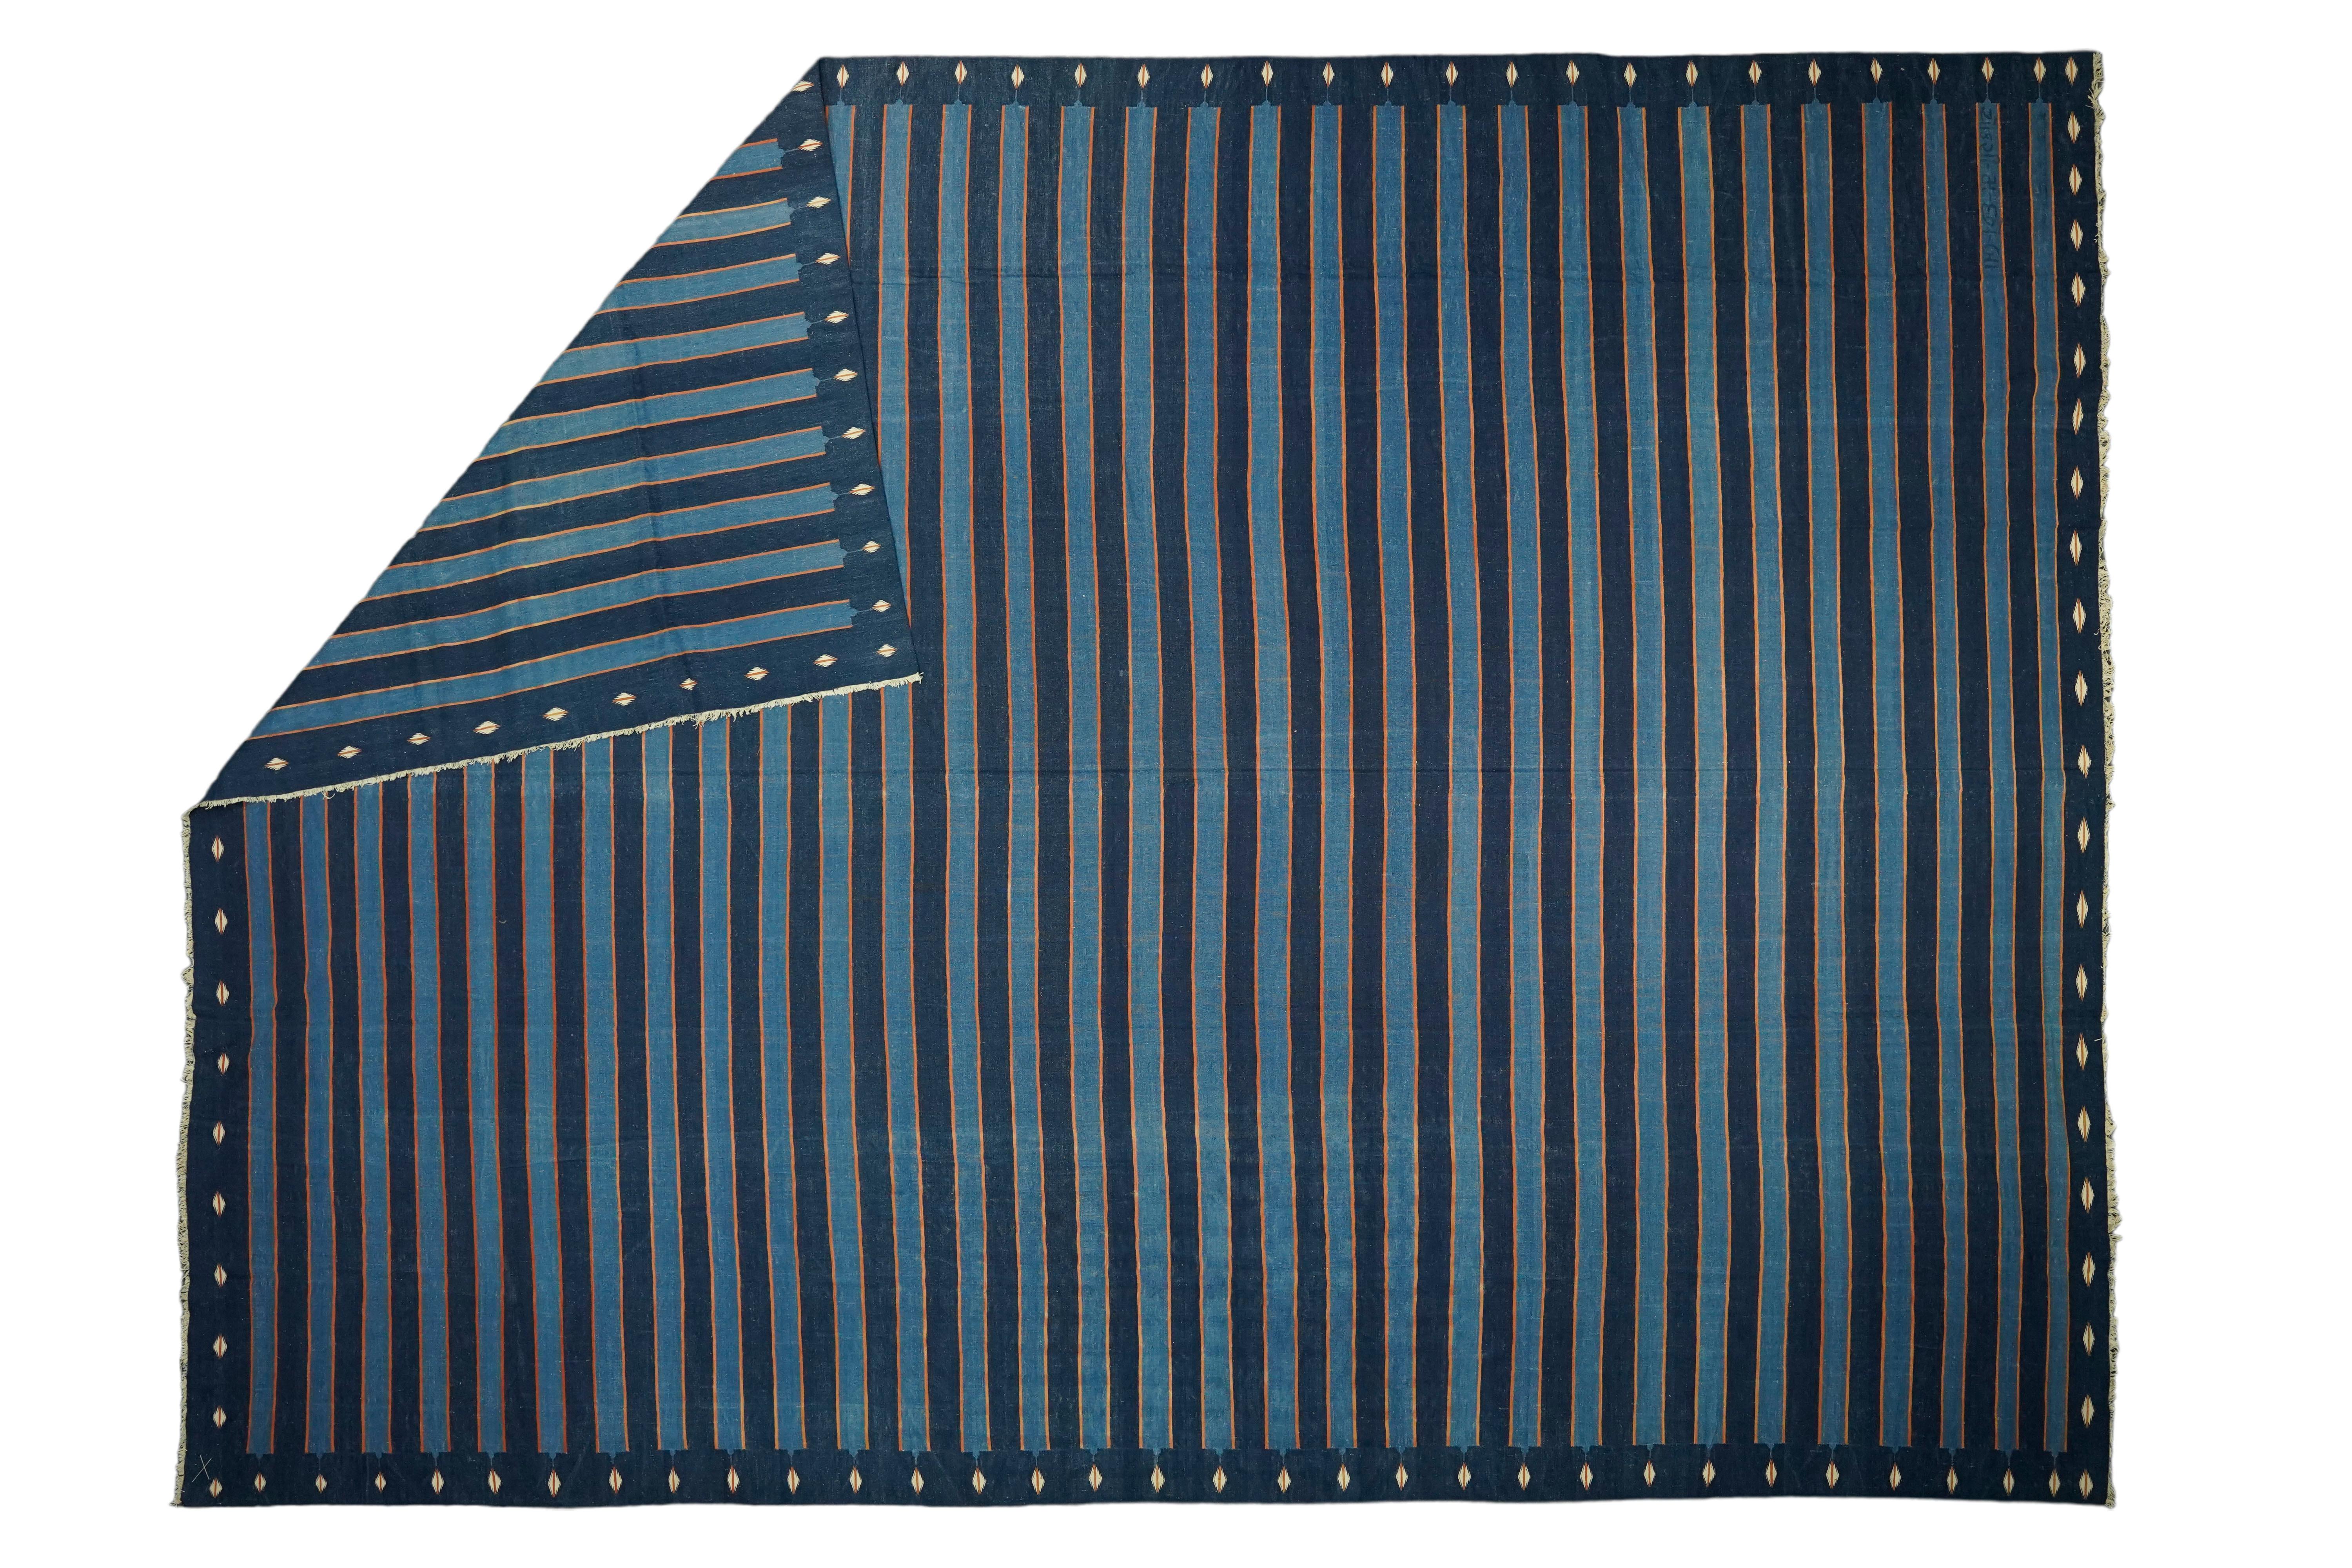 Dieser 13x18 große Teppich ist ein seltener Vintage-Dhurrie-Teppich aus einer aufregenden neuen Kuration von Rug &New Kilim aus der Mitte des Jahrhunderts. Das handgewebte Flachgewebe aus Wolle stammt aus Indien (ca. 1950-1960) und weist blaue